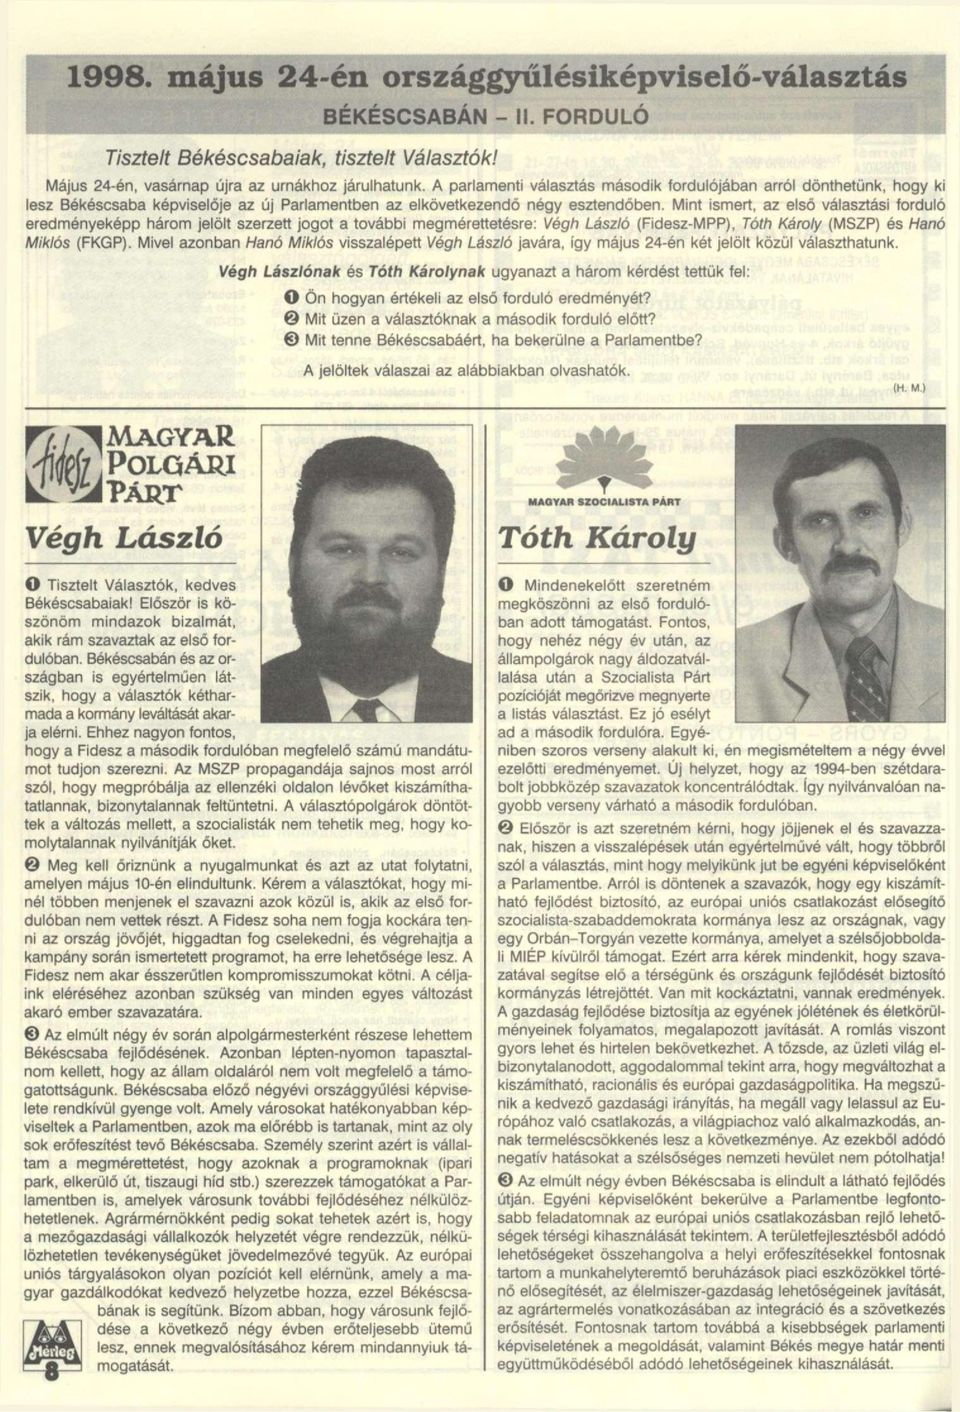 Mint ismert, az első választási forduló eredményeképp három jelölt szerzett jogot a további megmérettetésre: Végh László (Fidesz-MPP), Tóth Károly (MSZP) és Hanó Miklós (FKGP).